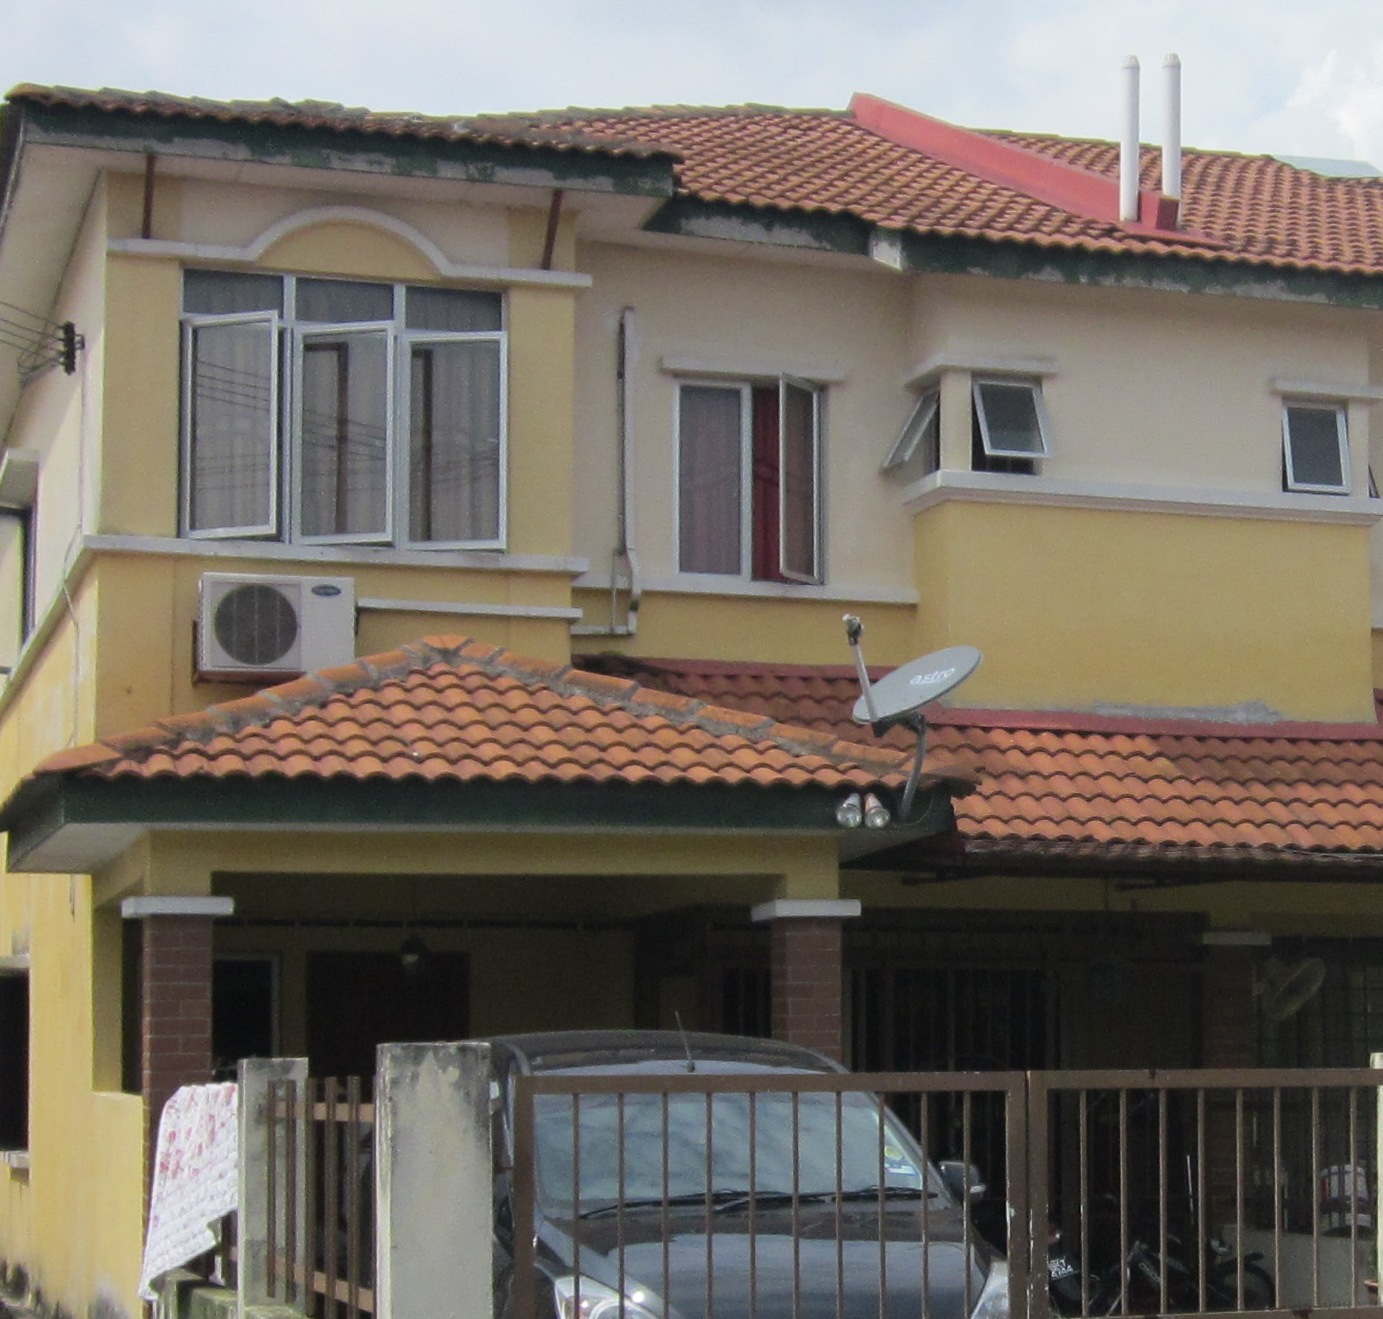 Rumah Sewa Klang : Rumah Sewa Port Klang - Ceria kg / Rumah untuk di